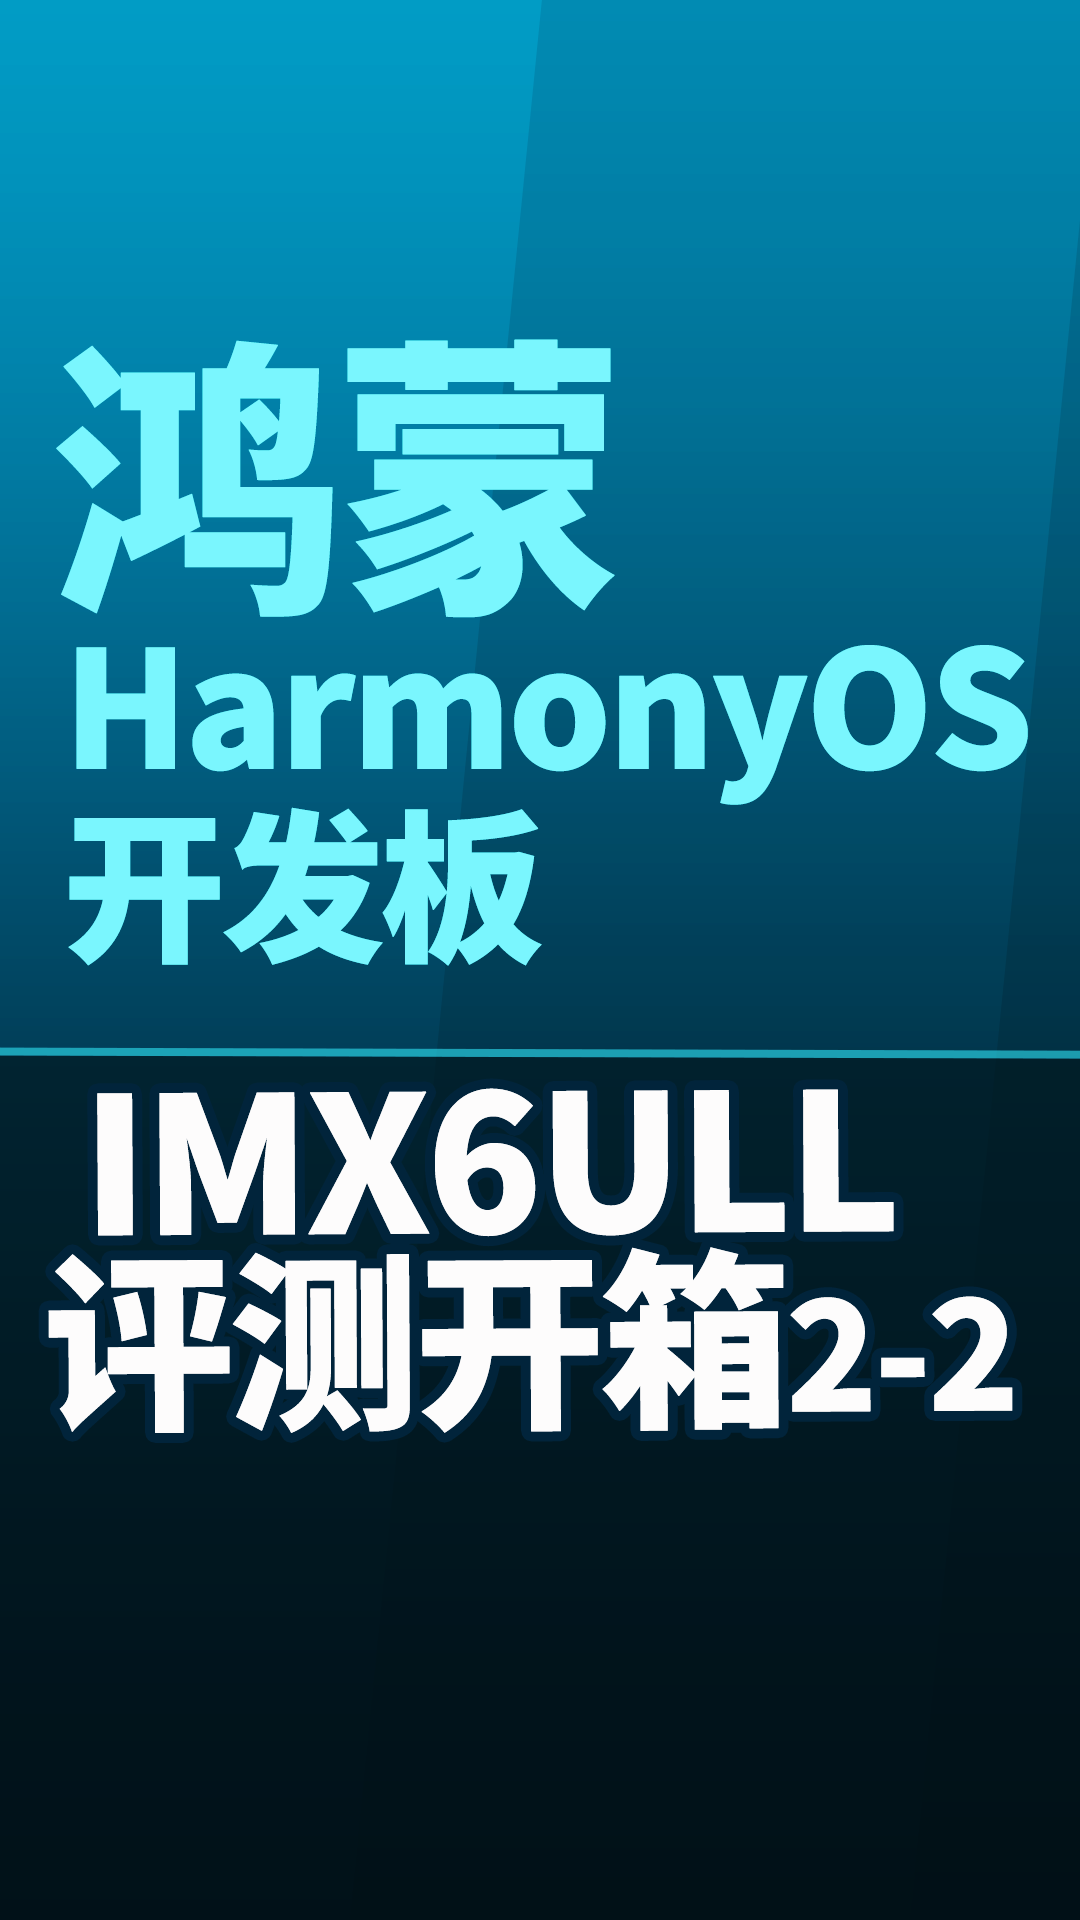 【鸿蒙评测开箱】鸿蒙 HarmonyOS 开发板 IMX6ULL 评测开箱2-2#嵌入式开发 